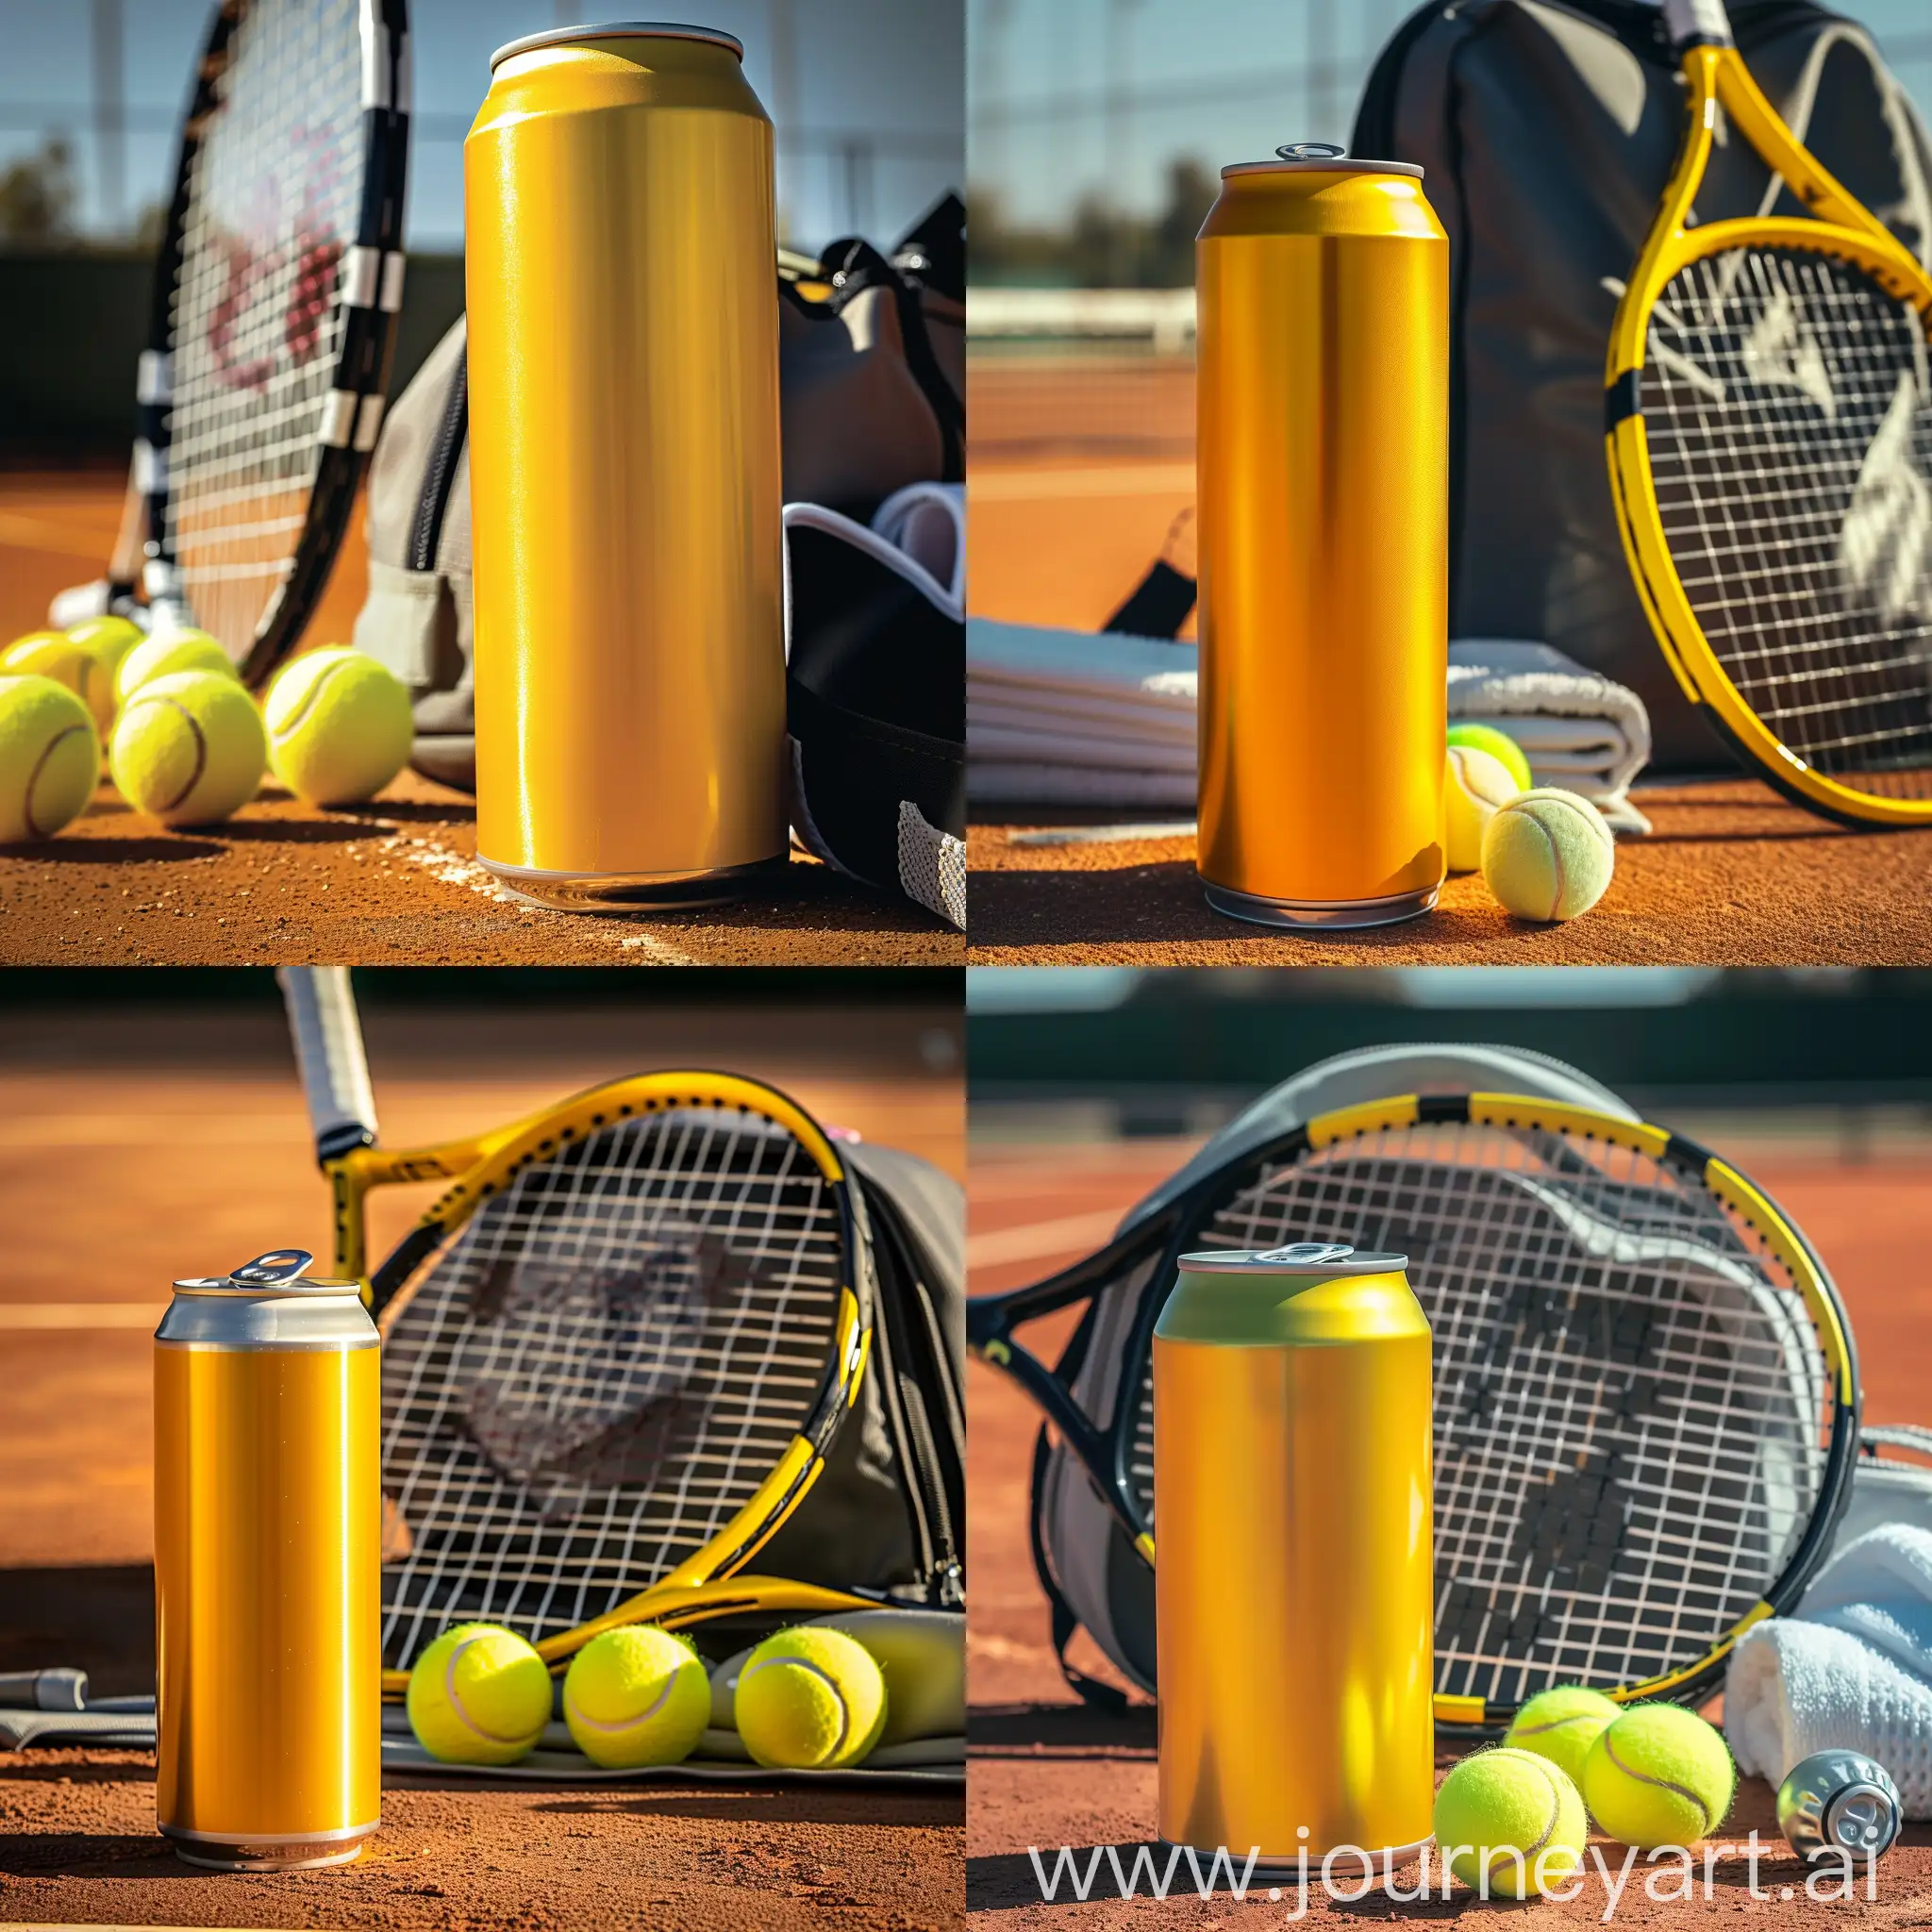 Sur le court de tennis, une canette jaune vive d'une boisson énergisante se tient au premier plan, au côté d'un équipement de tennis composé d'une raquette, de balles et d'un sac. La canette s'impose avec sa couleur lumineuse, sa surface lisse et son design qui suggère la vitalité et l'énergie brute. La lumière du jour joue sur la surface métallique de la canette, soulignant sa fraîcheur rafraîchissante.
La raquette de tennis, avec son réseau serré et sa poignée solide, suggère l'intensité et la précision du sport. Les balles de tennis alignées, prêtes à être utilisées, symbolisent la dynamique du jeu. Le sac de sport, ouvert, révèle une serviette de sport et une bouteille d'eau, soulignant l'importance de l'hydratation et du réconfort pendant les matches. Cette vue rapprochée reflète l'énergie et l'excitation propres à la pratique du tennis, tout en mettant en évidence l'importance d'une boisson énergisante pour le dynamisme des sportifs.